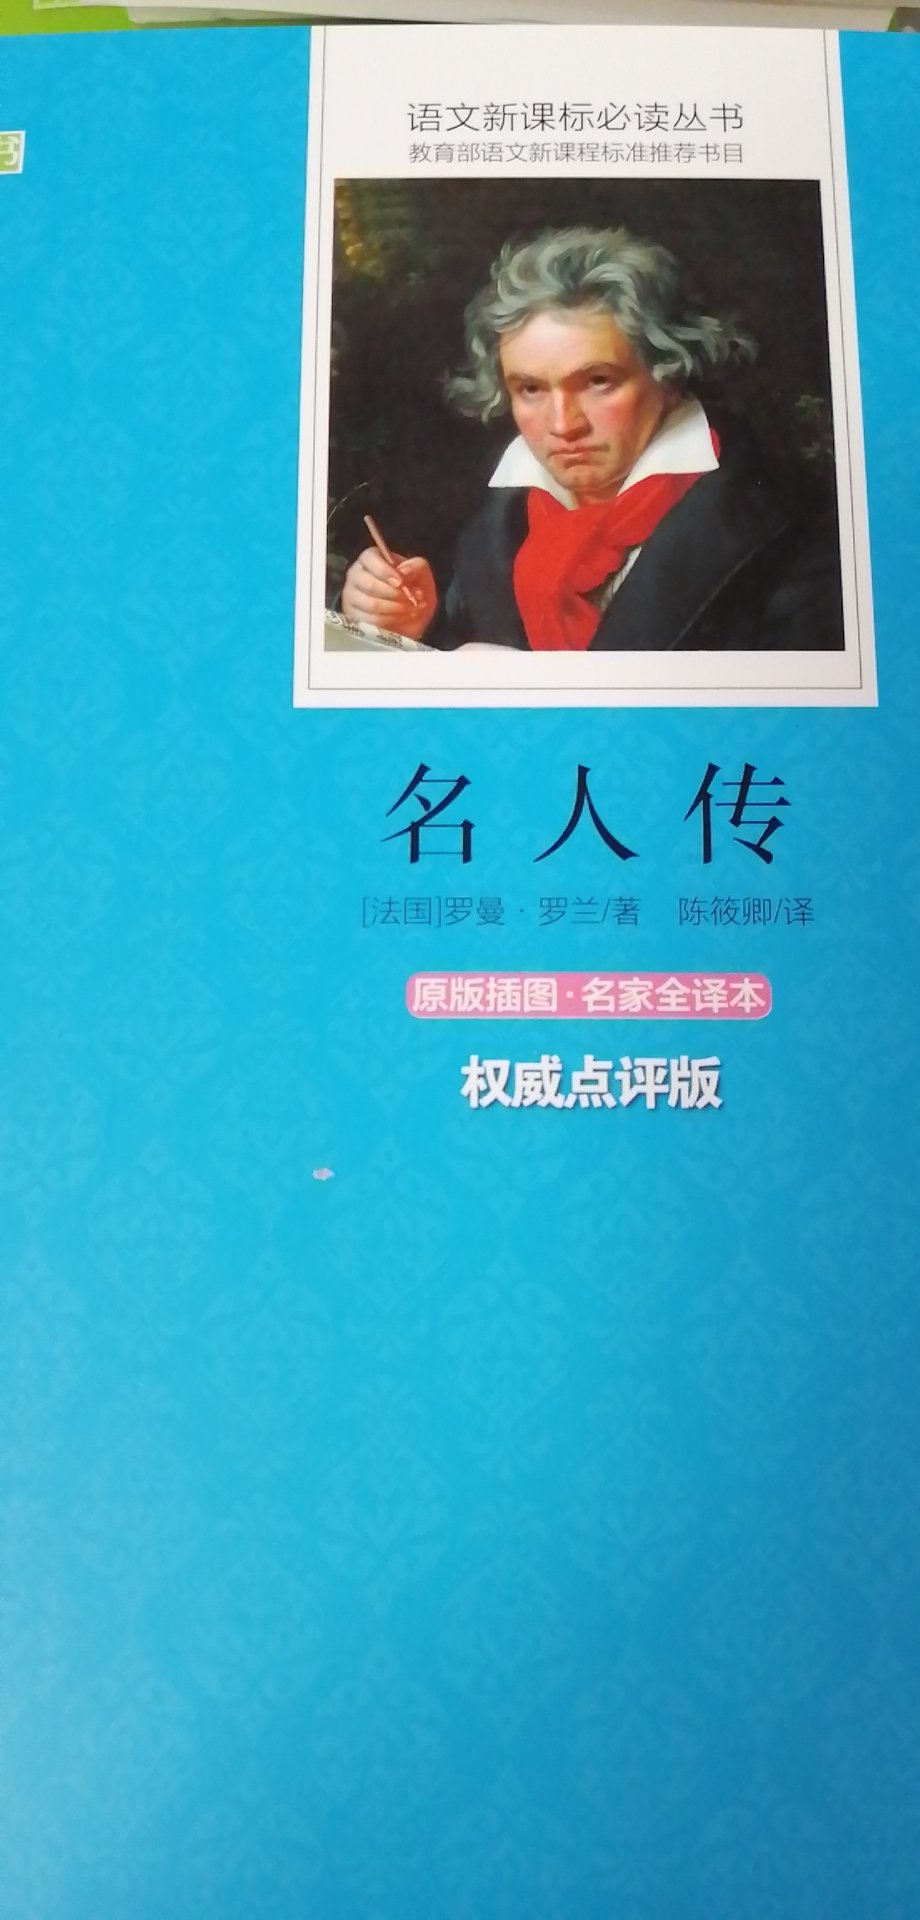 一如既往的喜欢北京师范大学出版社的书品质超级好